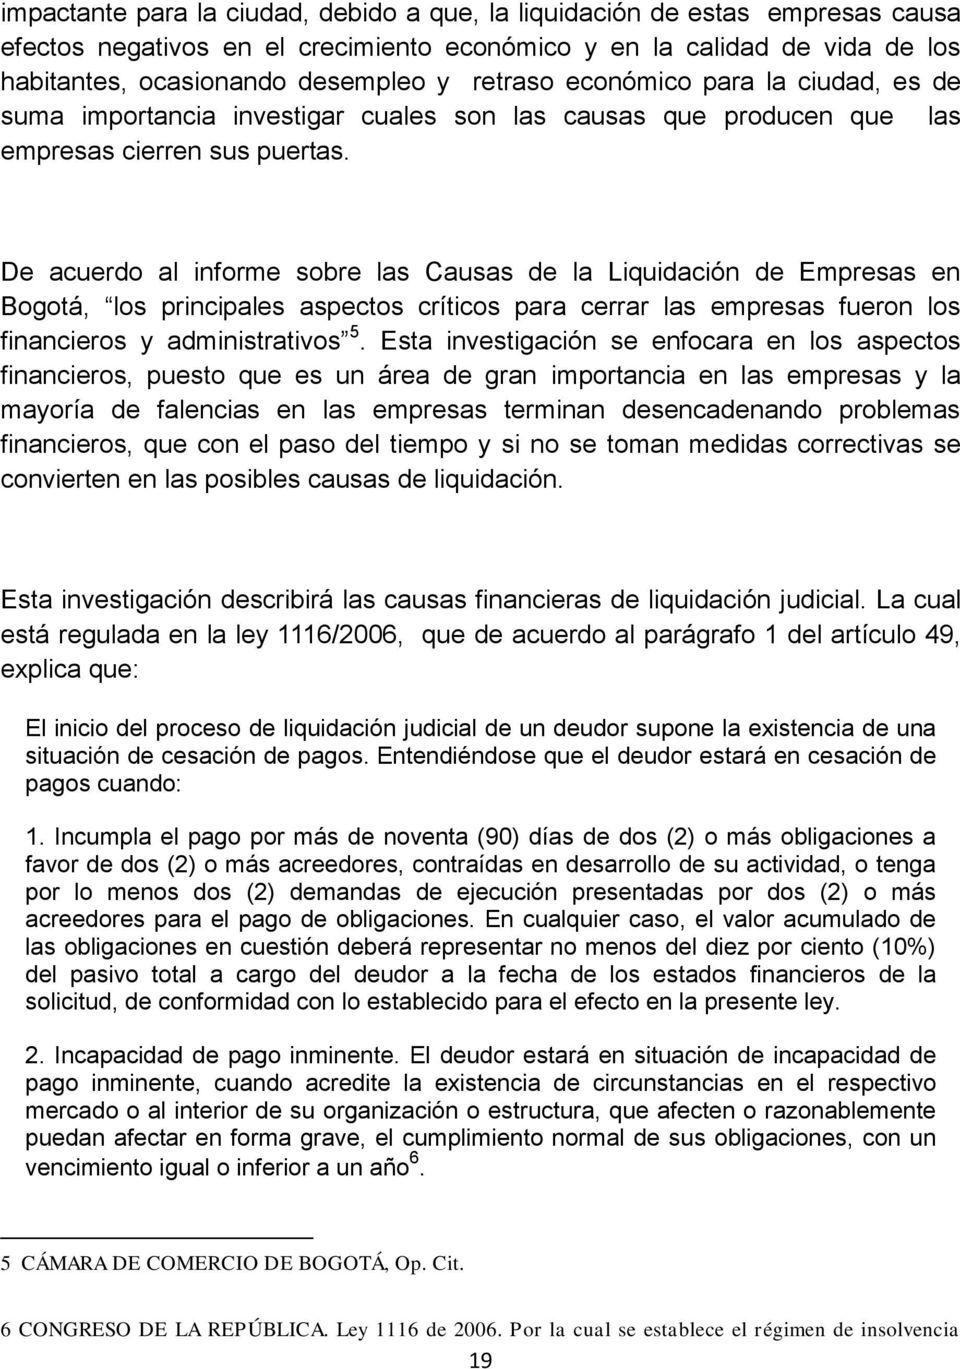 De acuerdo al informe sobre las Causas de la Liquidación de Empresas en Bogotá, los principales aspectos críticos para cerrar las empresas fueron los financieros y administrativos 5.